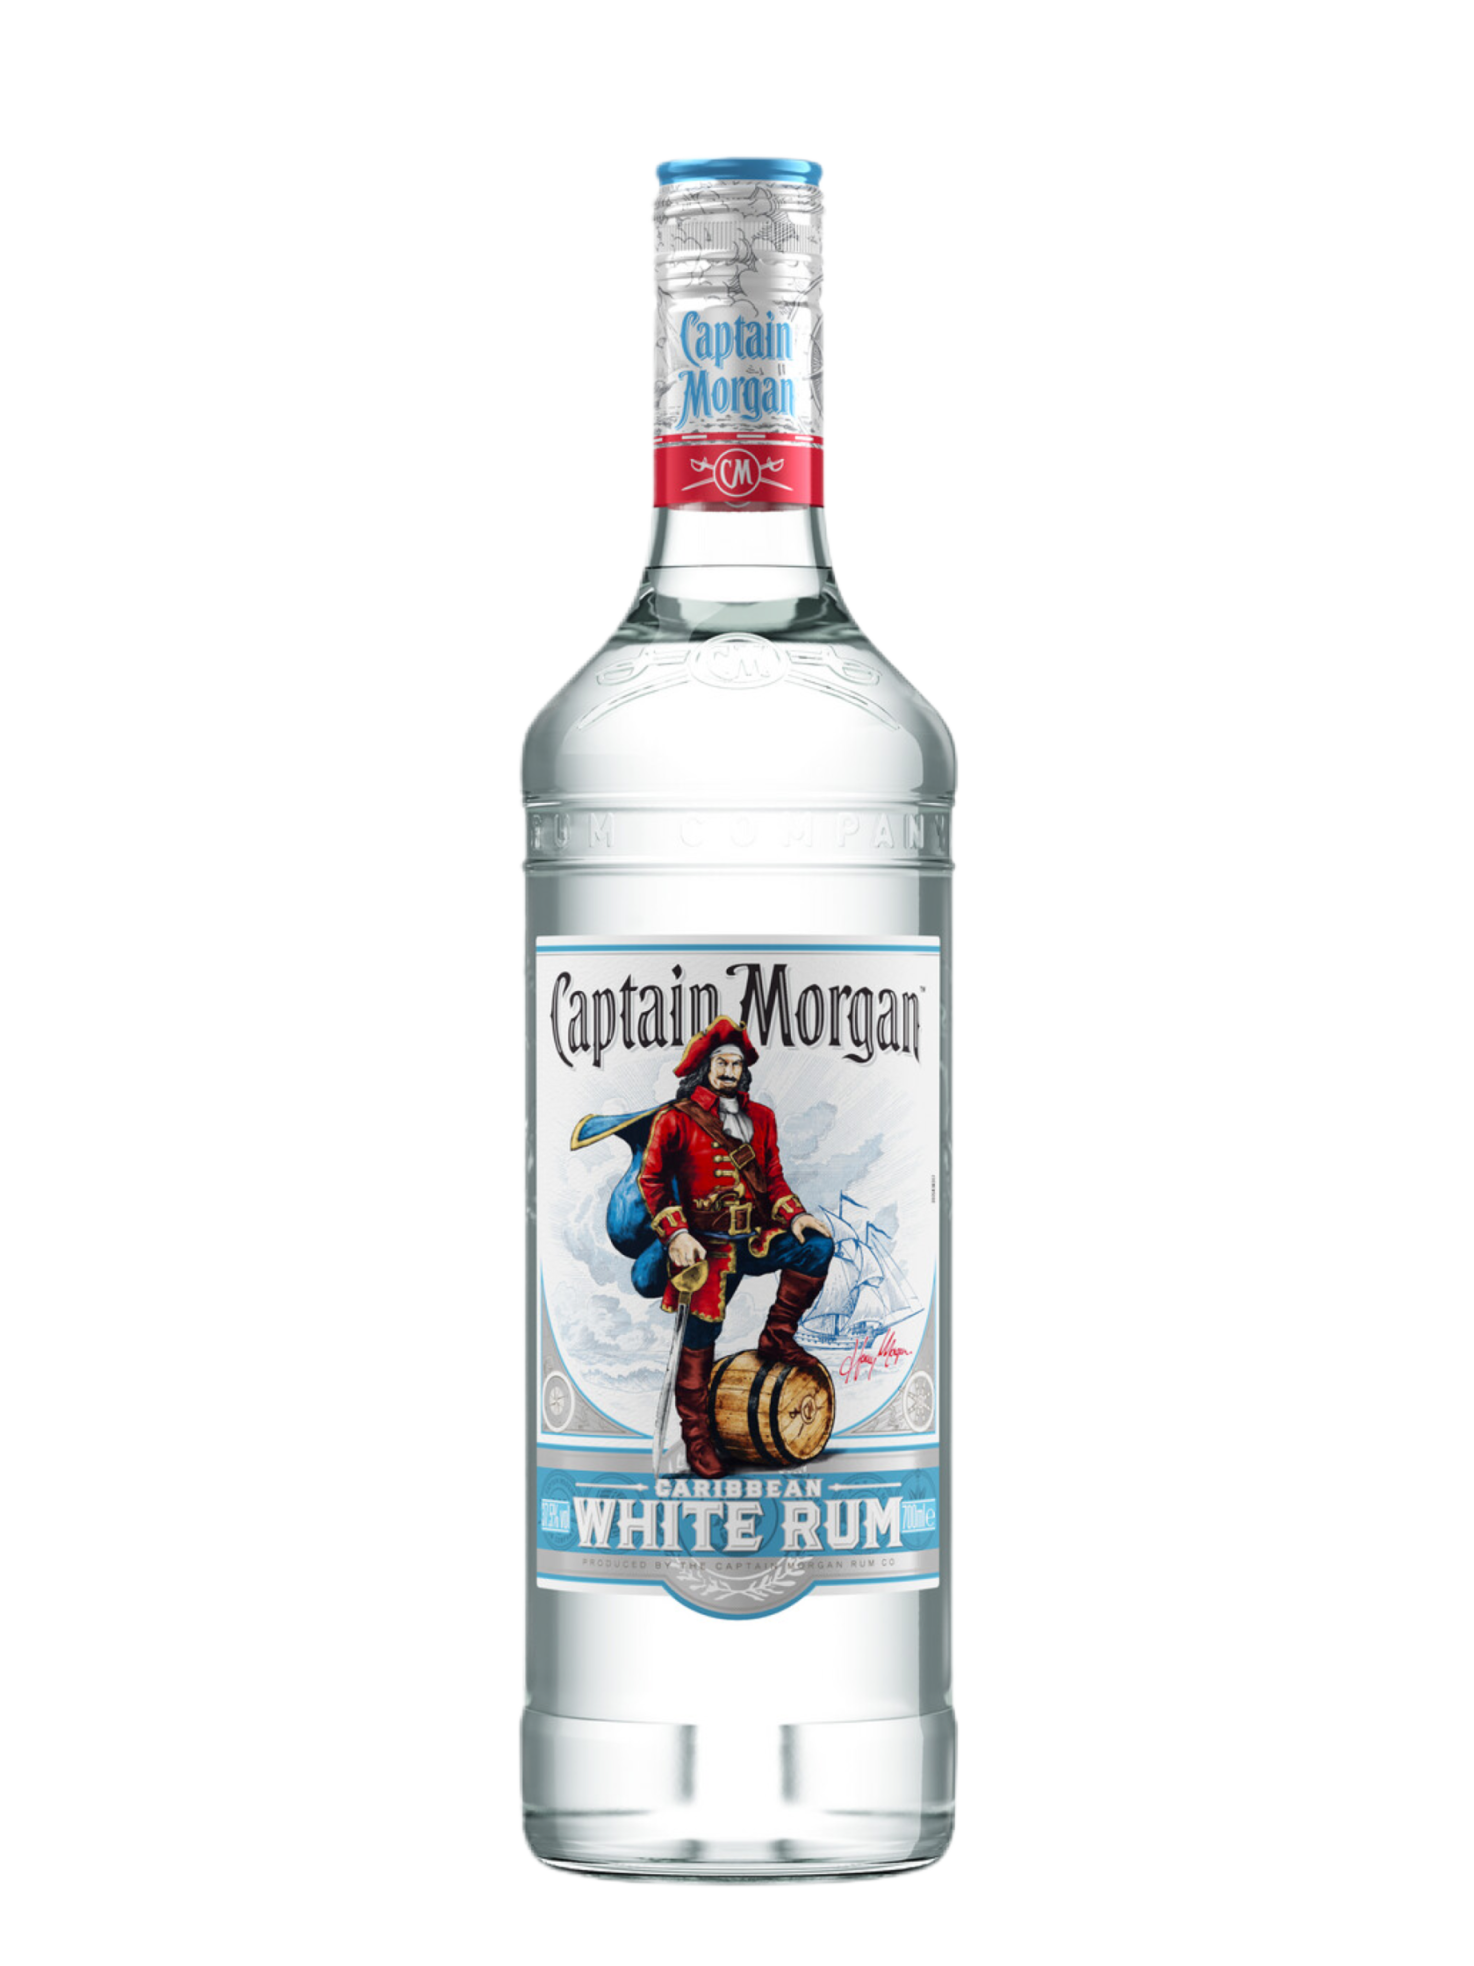 Капитан Морган Уайт спиртной напиток 37,5% 0,7л (Соединенное Королевство)